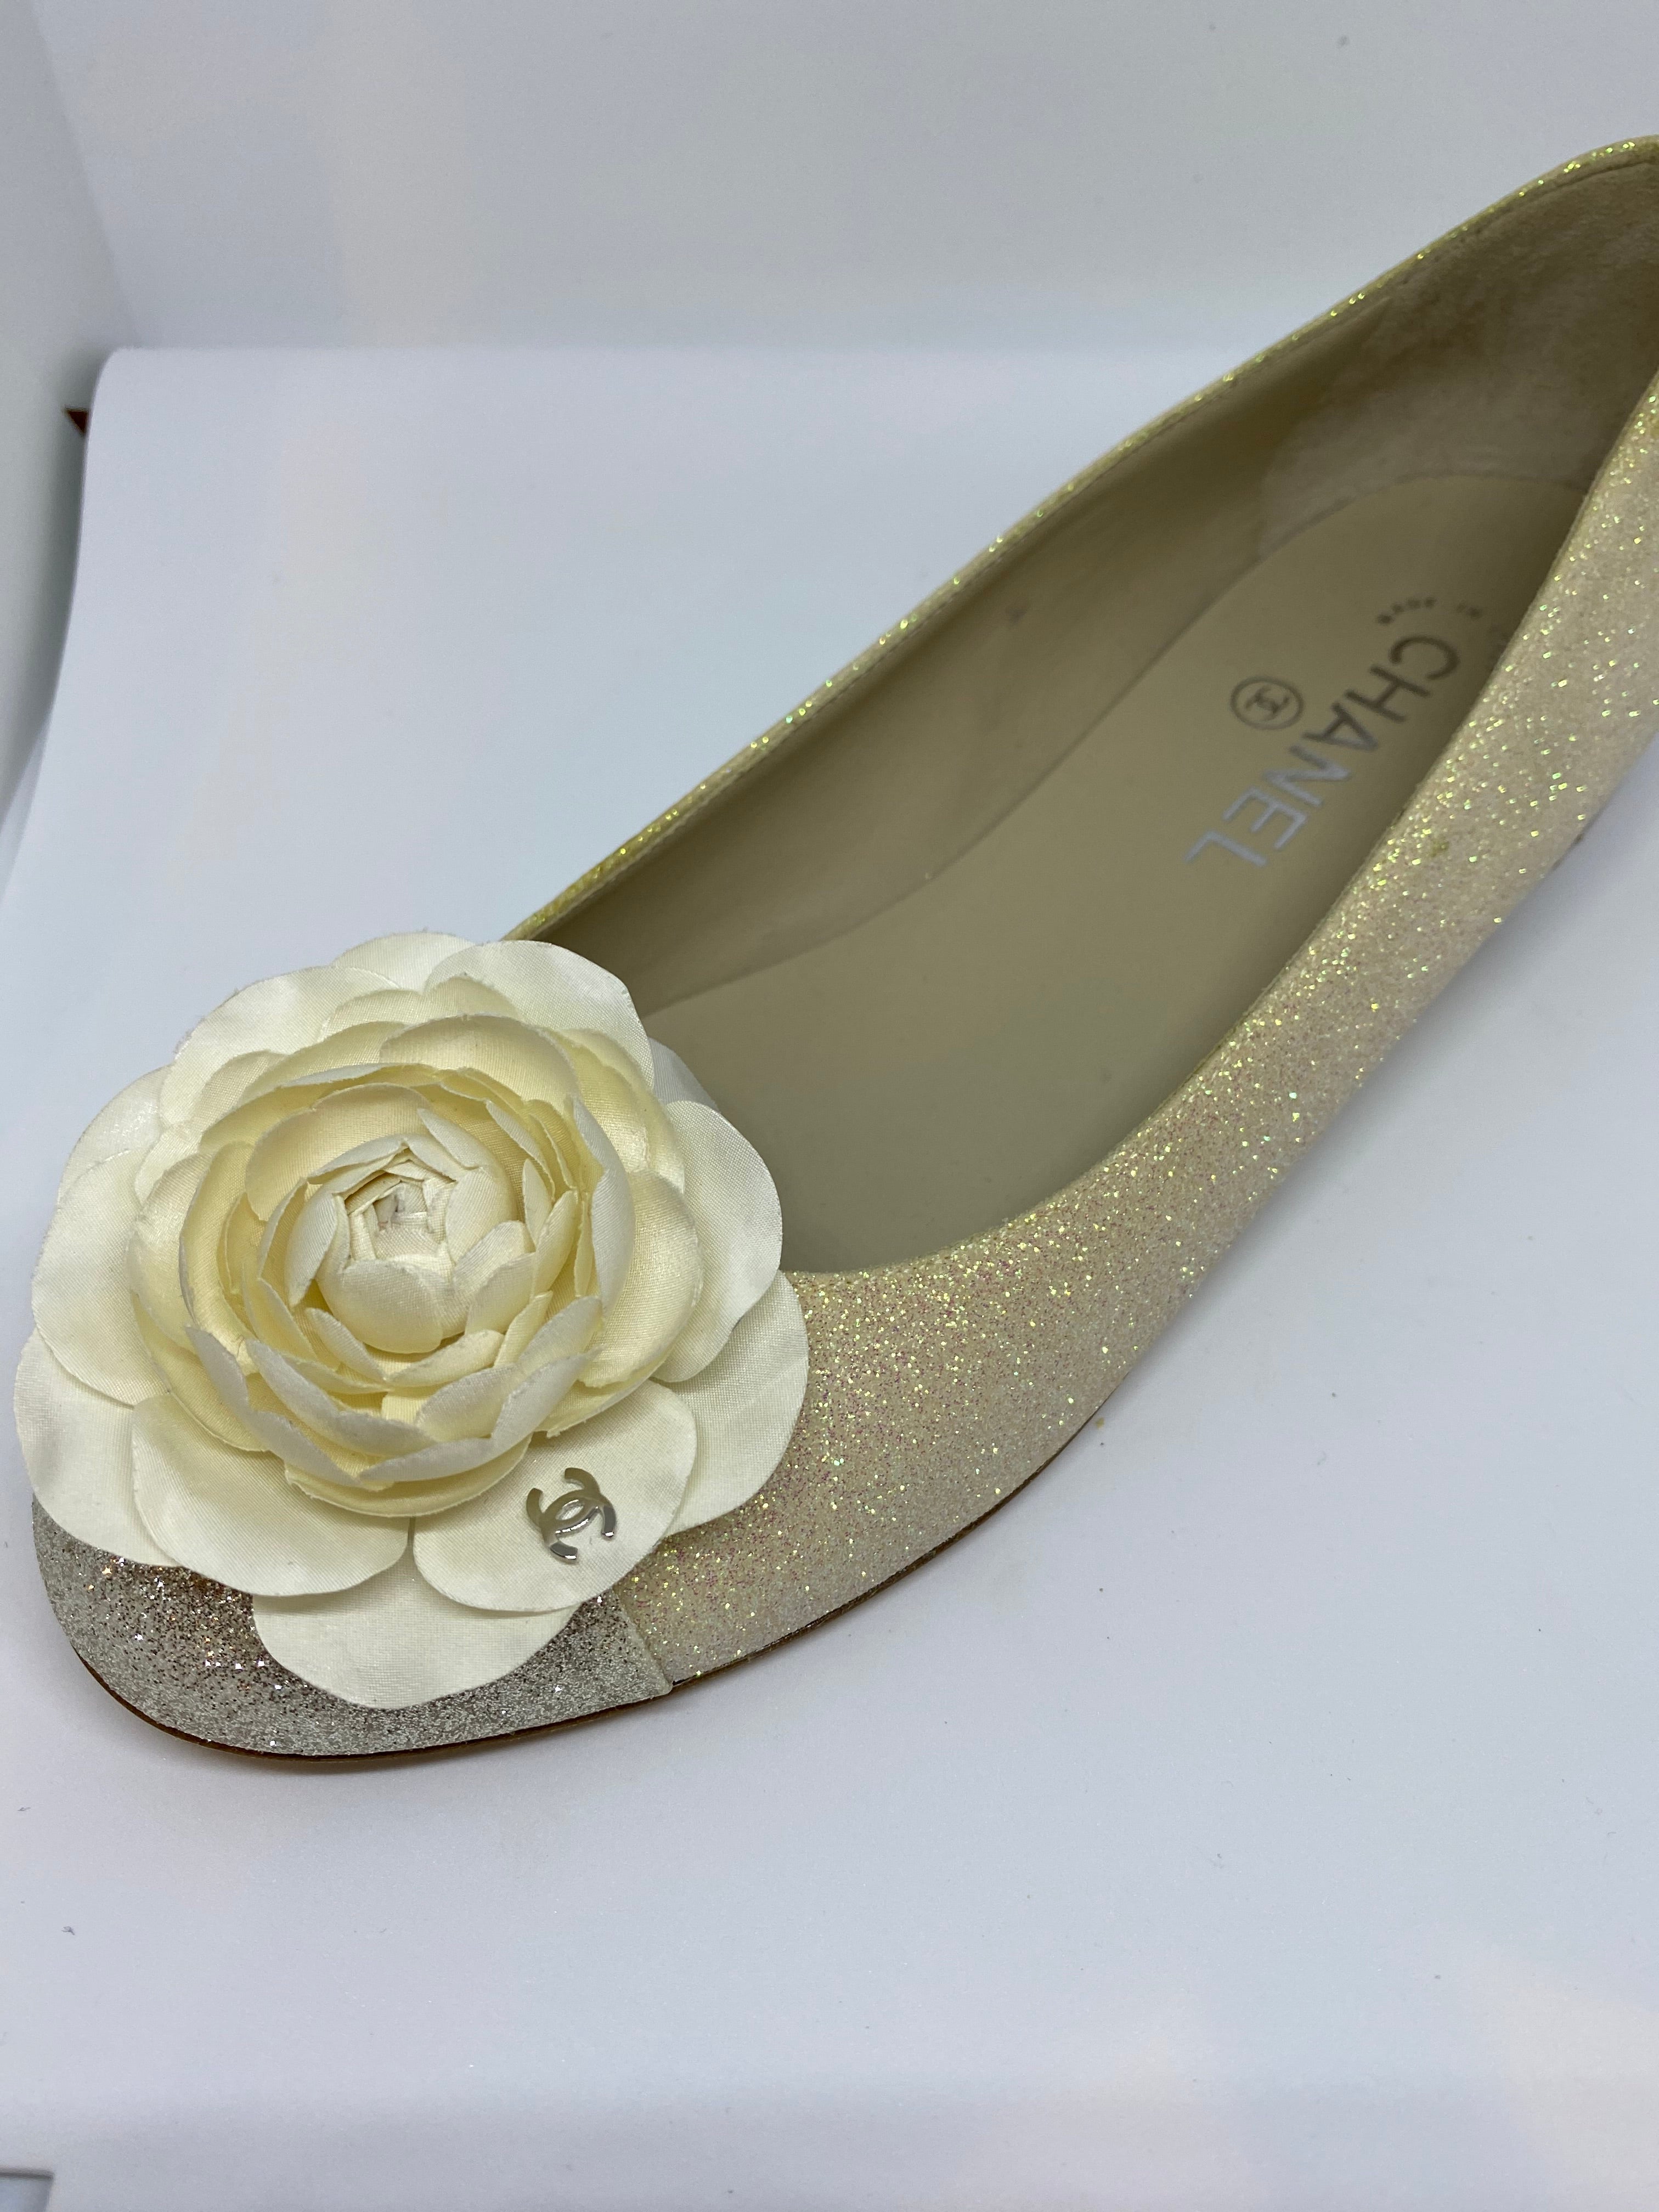 Chanel 2020 2020 Denim Cap-Toe Ballet Flats - Blue Flats, Shoes